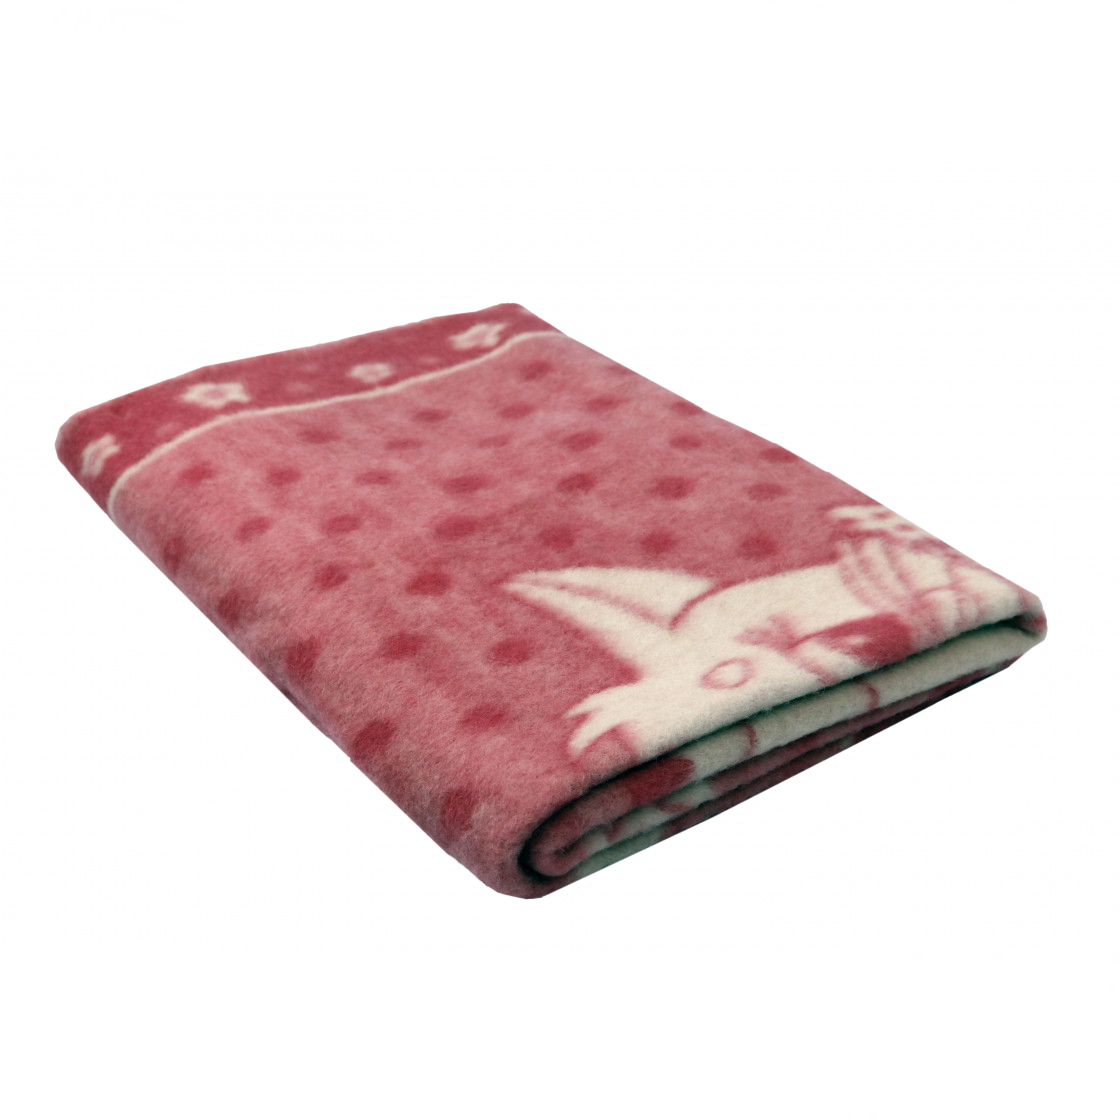 Детское одеяло Белка цвет: розовый Теплое (100х140 см), размер 100х140 см valt828063 Детское одеяло Белка цвет: розовый Теплое (100х140 см) - фото 1